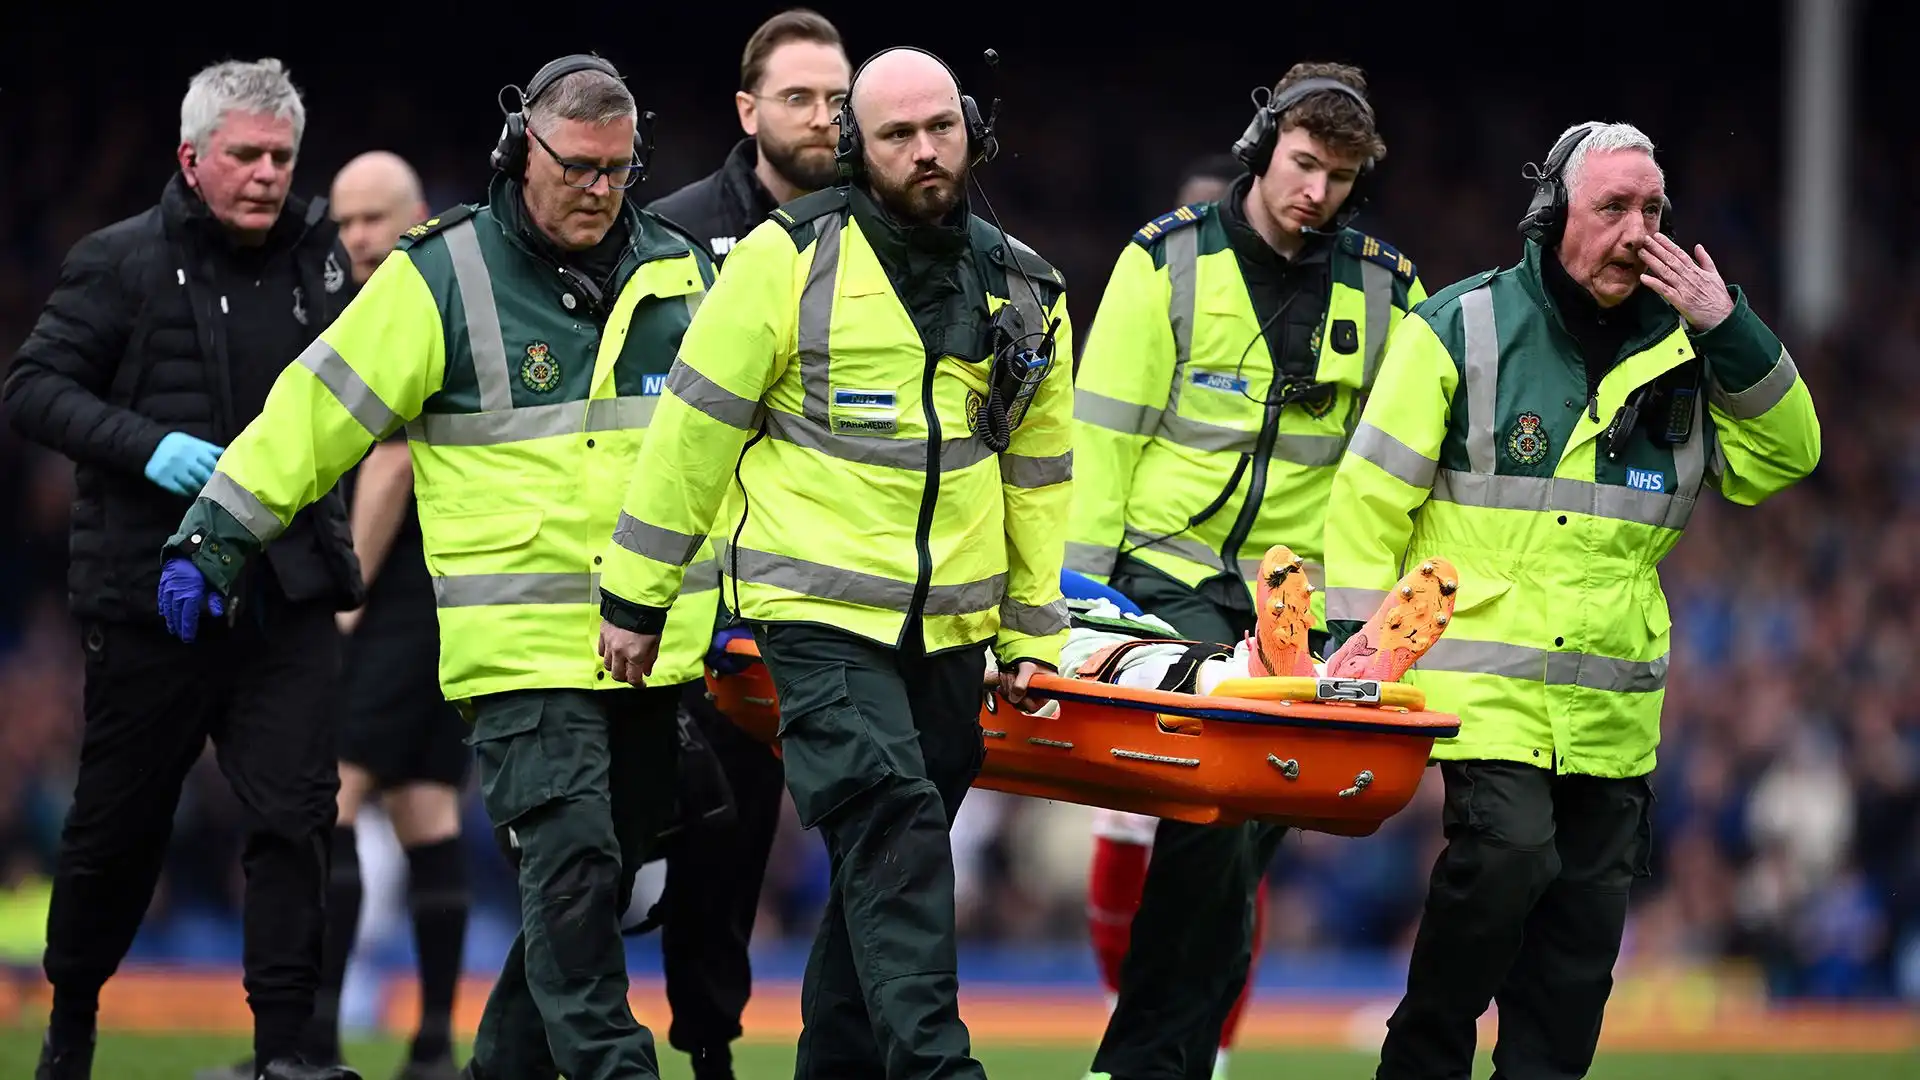 L'ex giocatore dell'Udinese è stato portato in ospedale, dove si è sottoposto ad alcuni esami